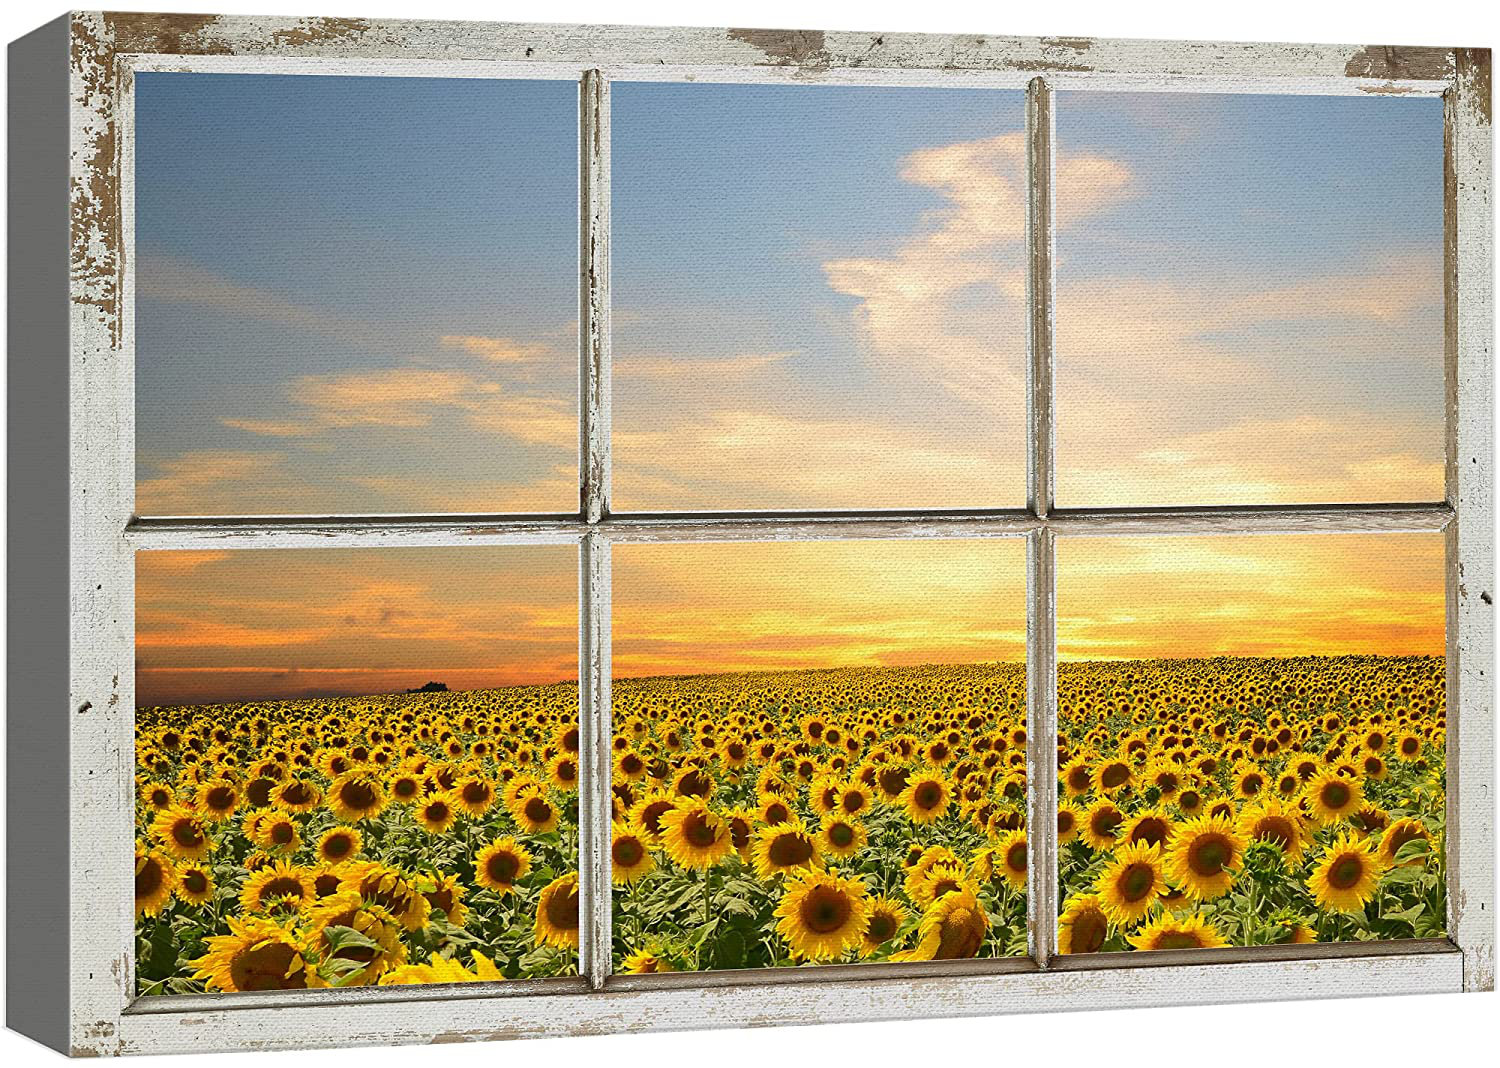 IDEA4WALL Canvas Print Wall Art Window View Sunset Spring Summer